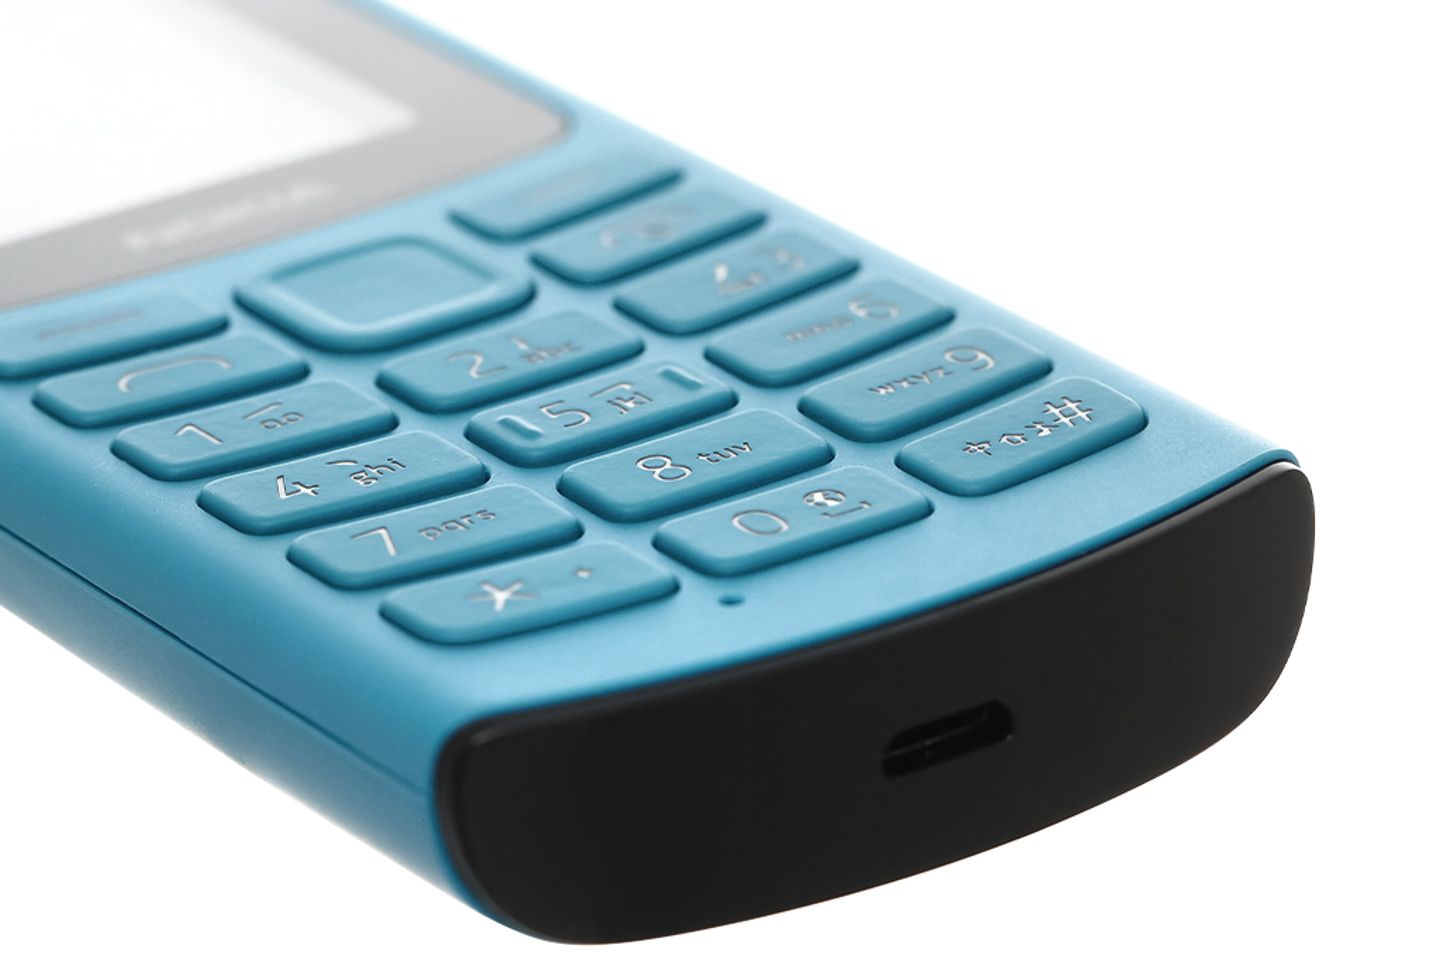 Mua Nokia 105 điện Thoại Bàn Phím 2019 2 Sim Cục Gạch Hàng Mới Zin Giá Rẻ  Pin Sài Cả Tuần Bảo Hành 6 Tháng - Yeep